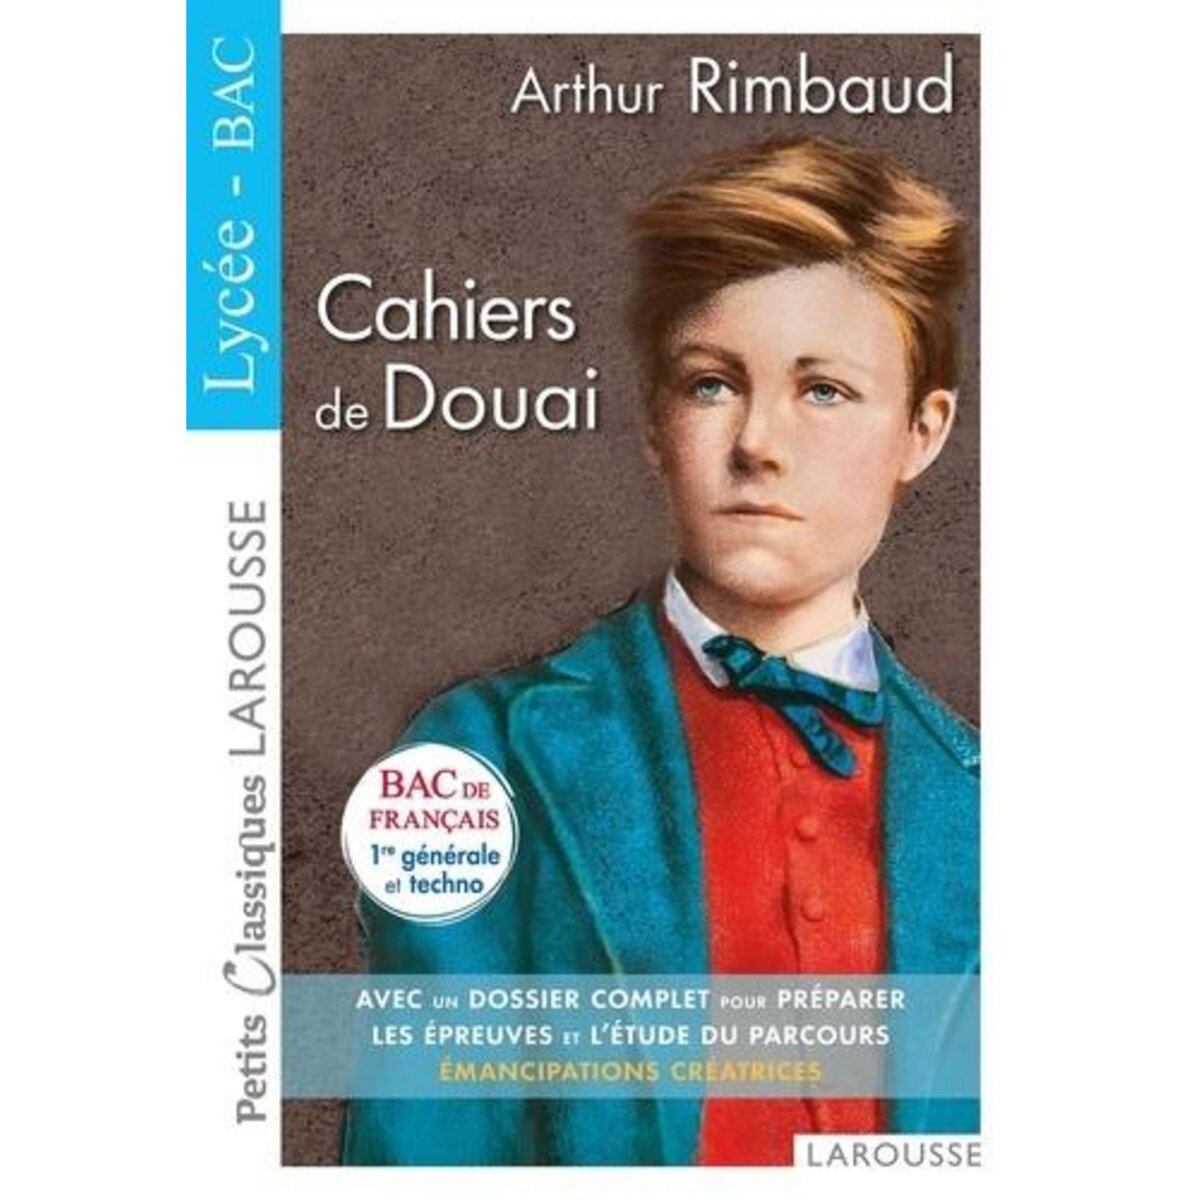  CAHIERS DE DOUAI, Rimbaud Arthur